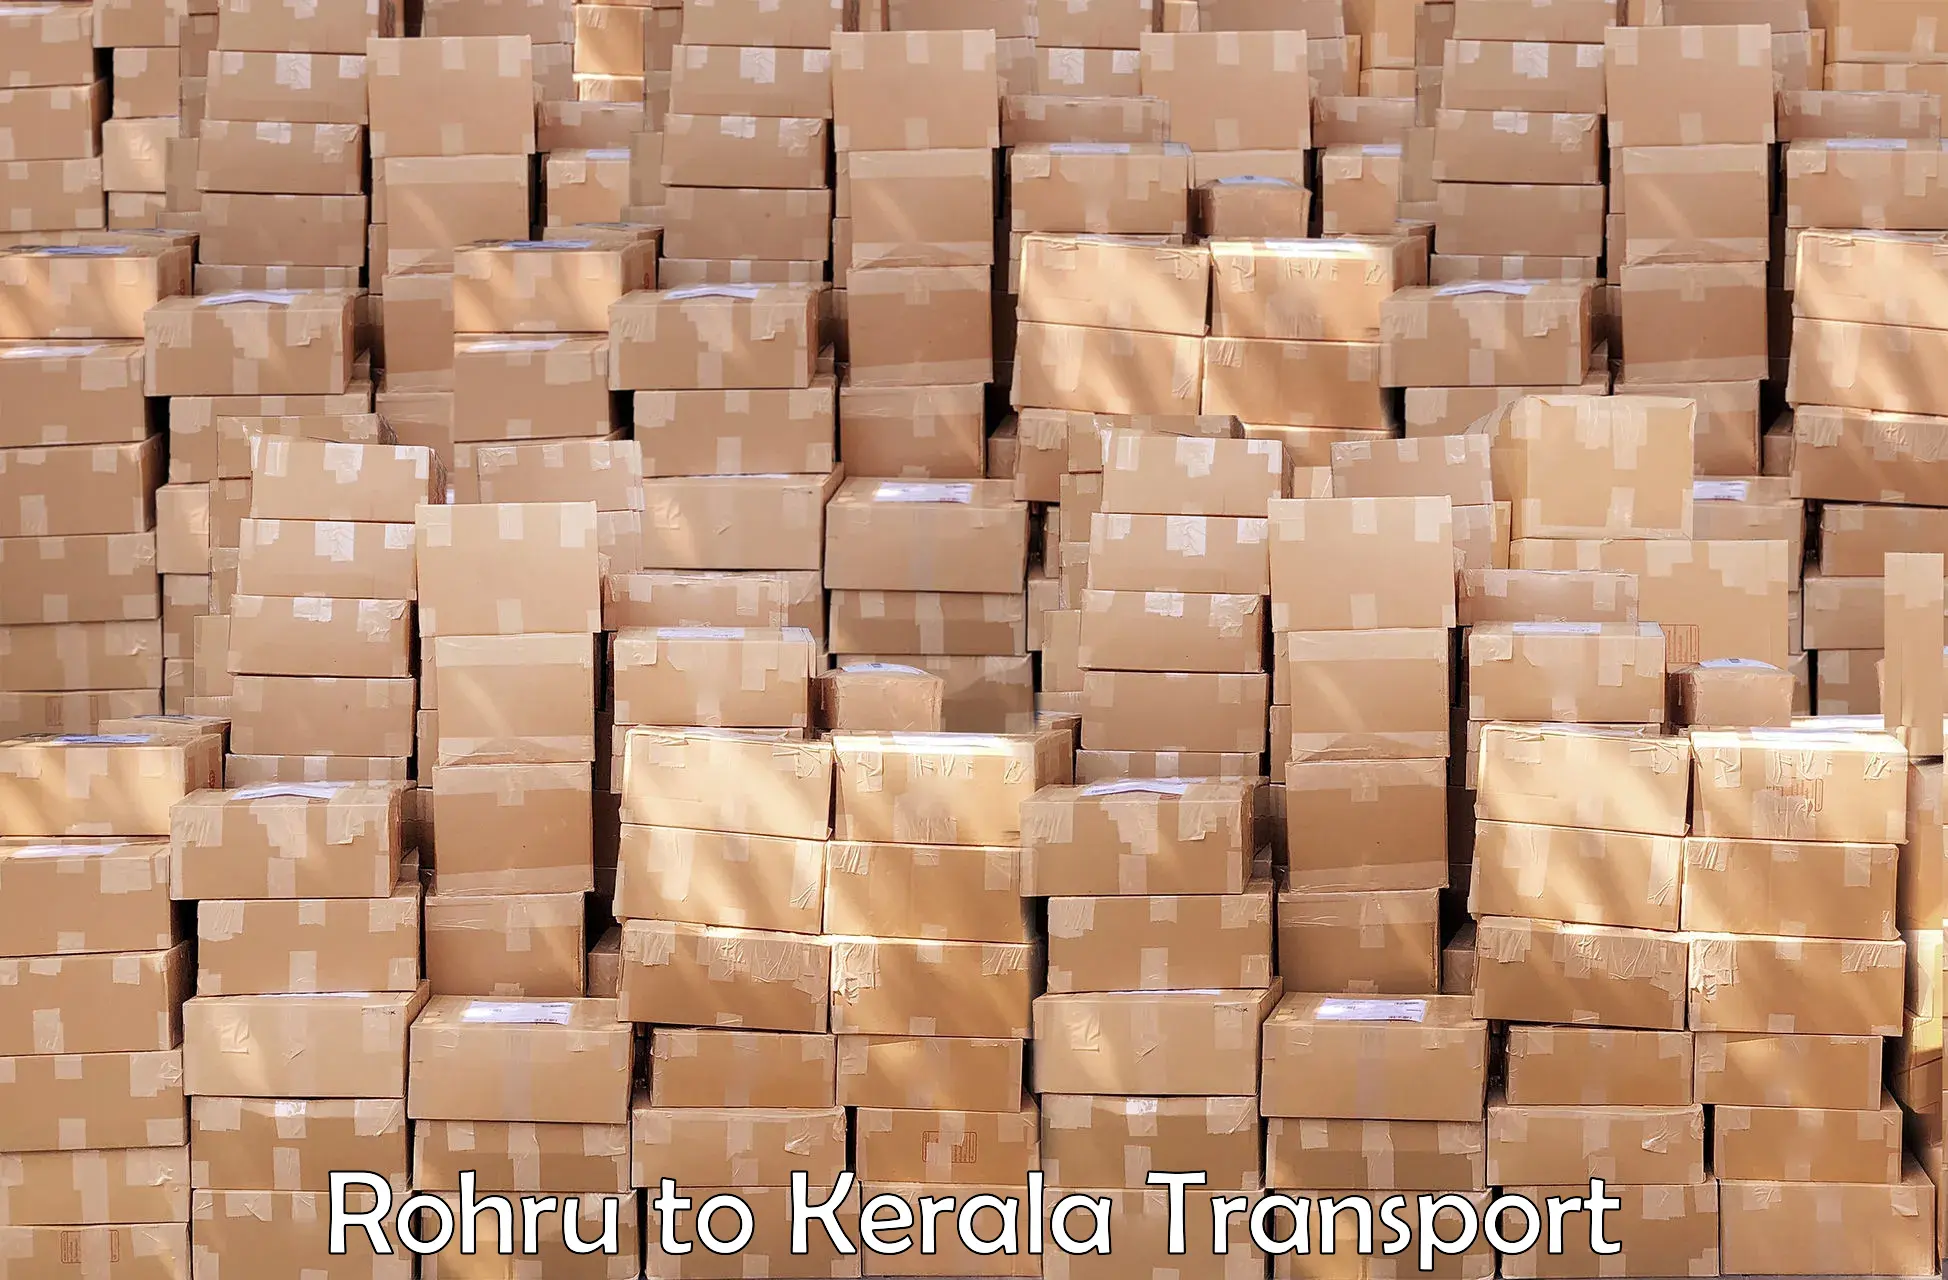 Cargo train transport services Rohru to Pandikkad